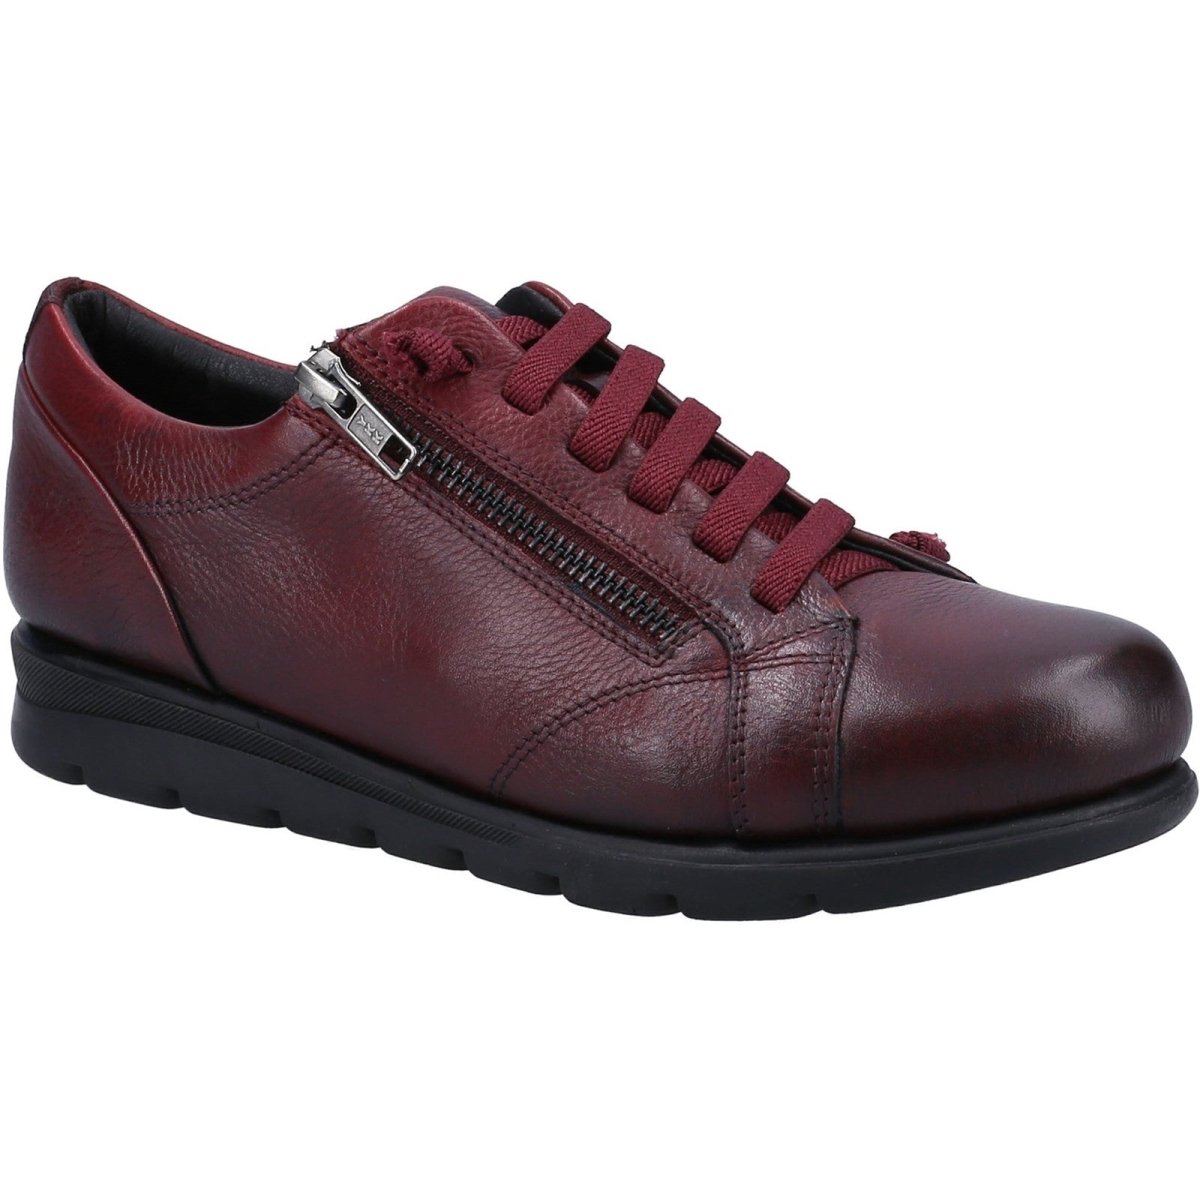 Fleet & Foster Polperro Leather Comfort Side-Zip Ladies Shoes - Shoe Store Direct